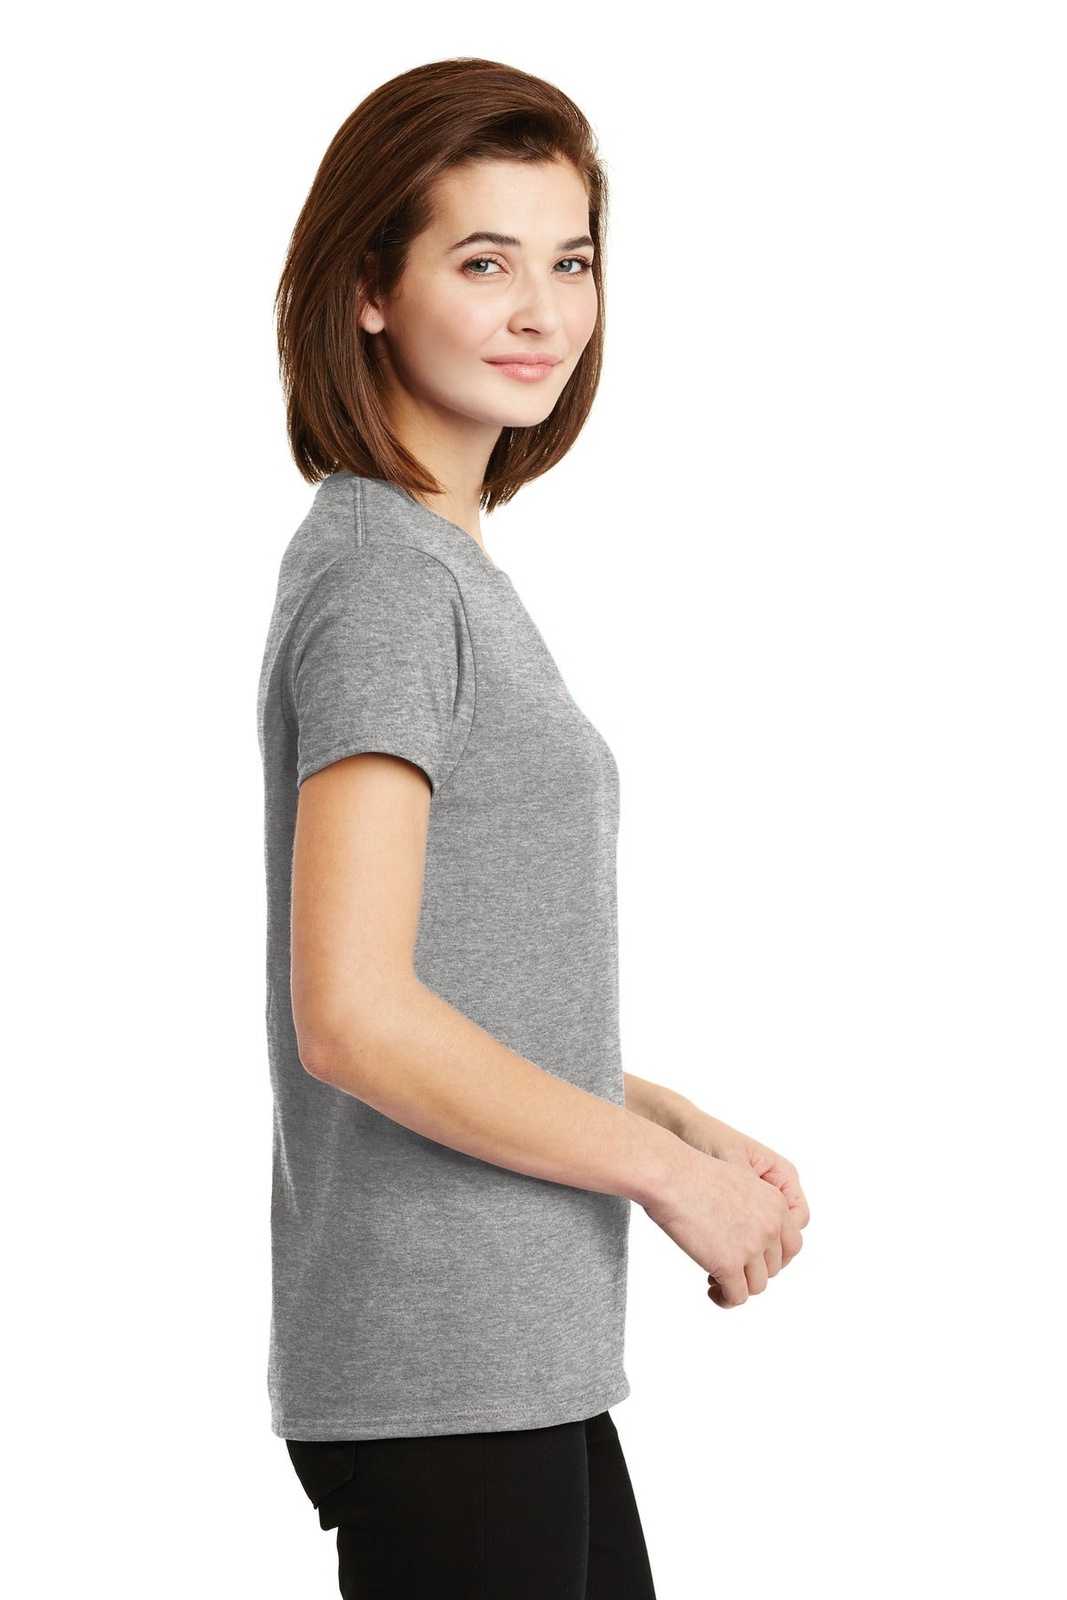 Gildan 2000L Ladies Ultra Cotton 100% Cotton T-Shirt - Sport Gray - HIT a Double